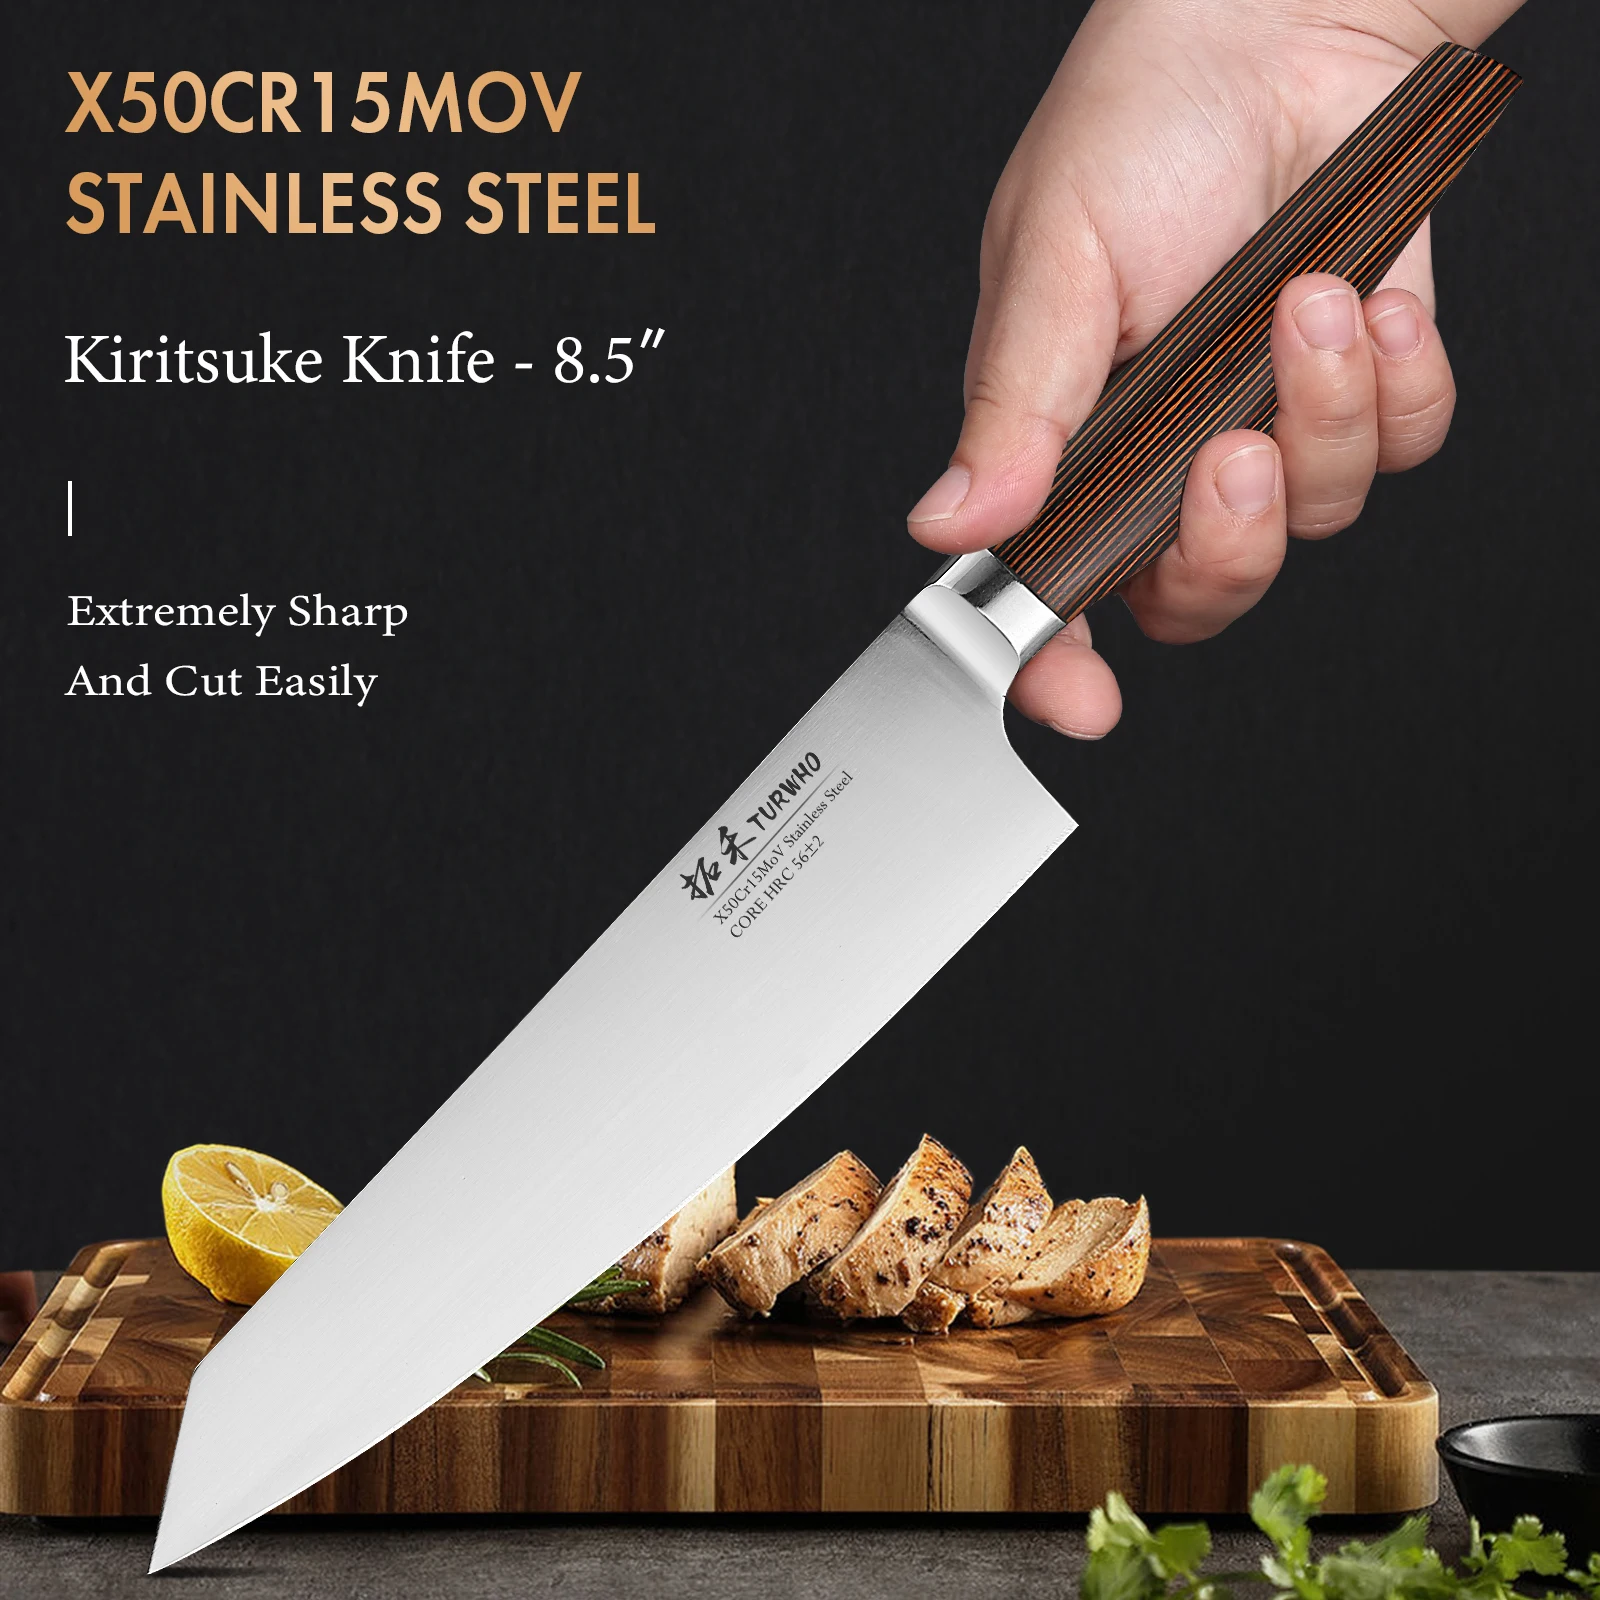 

Японский нож Kiritsuke TURWHO, кухонные инструменты из высокоуглеродистой нержавеющей стали, 8,5 дюйма, X50Cr15MoV, для резки рыбы, мяса